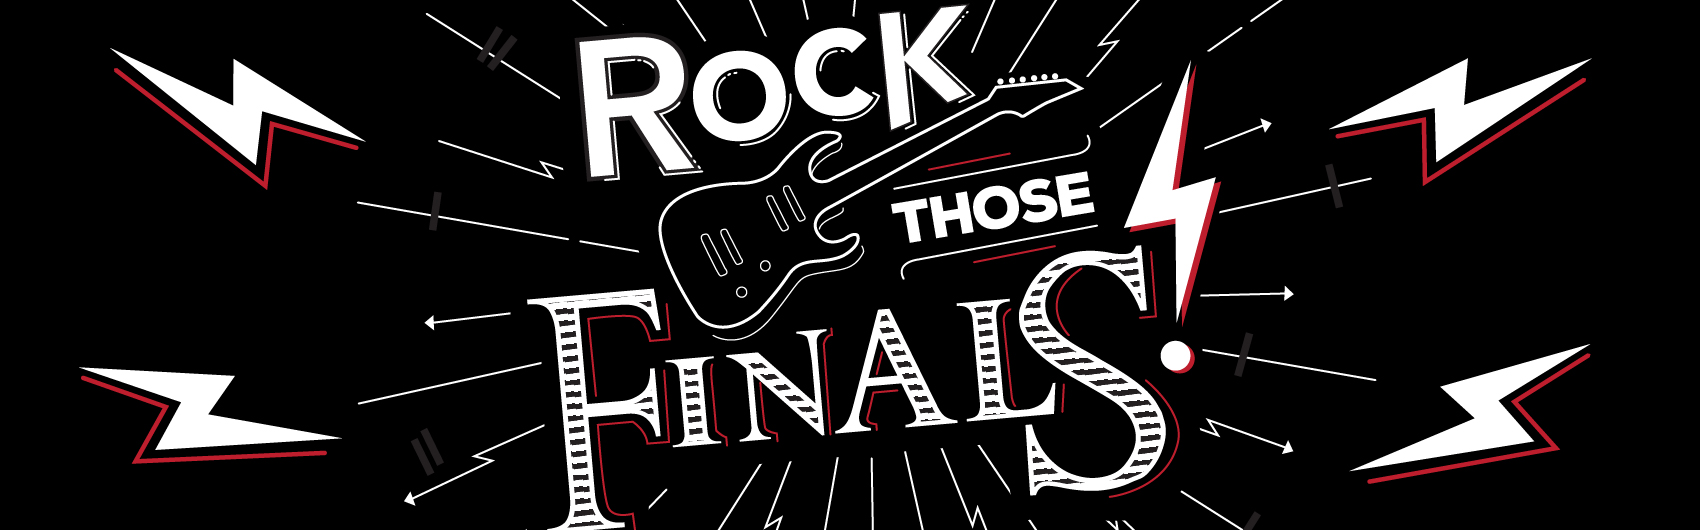 Rockin’ Finals Week Banner